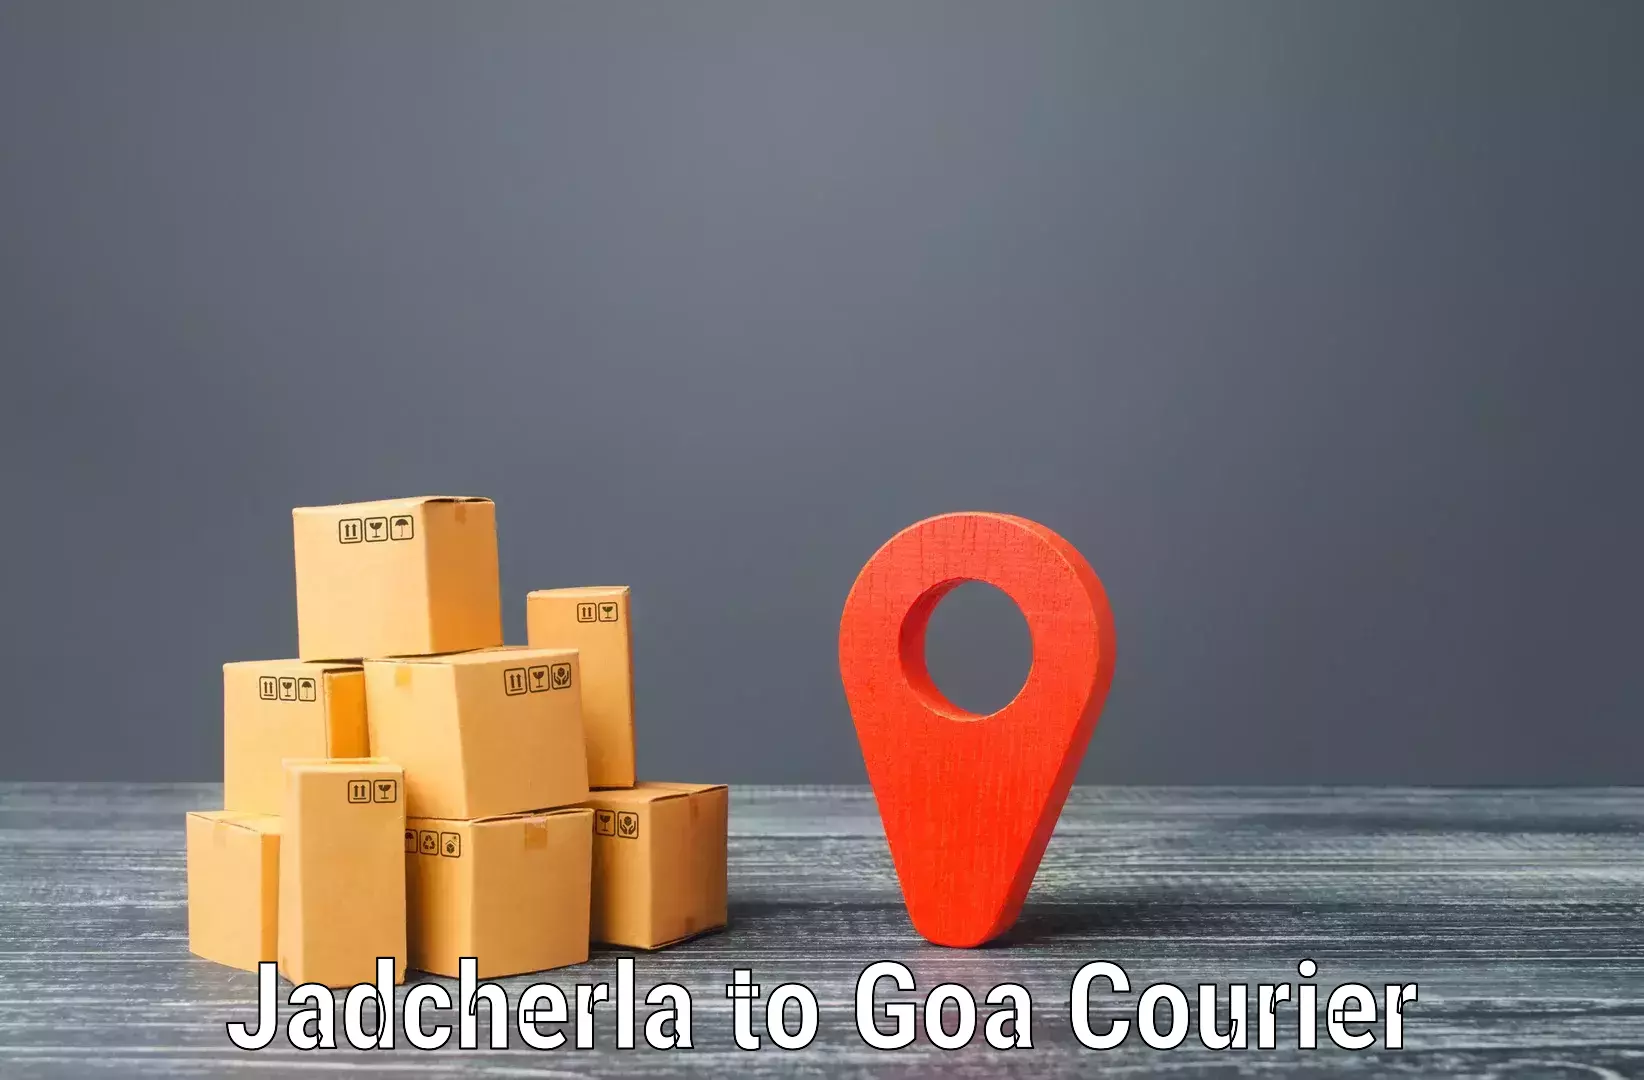 Logistics service provider Jadcherla to Bardez